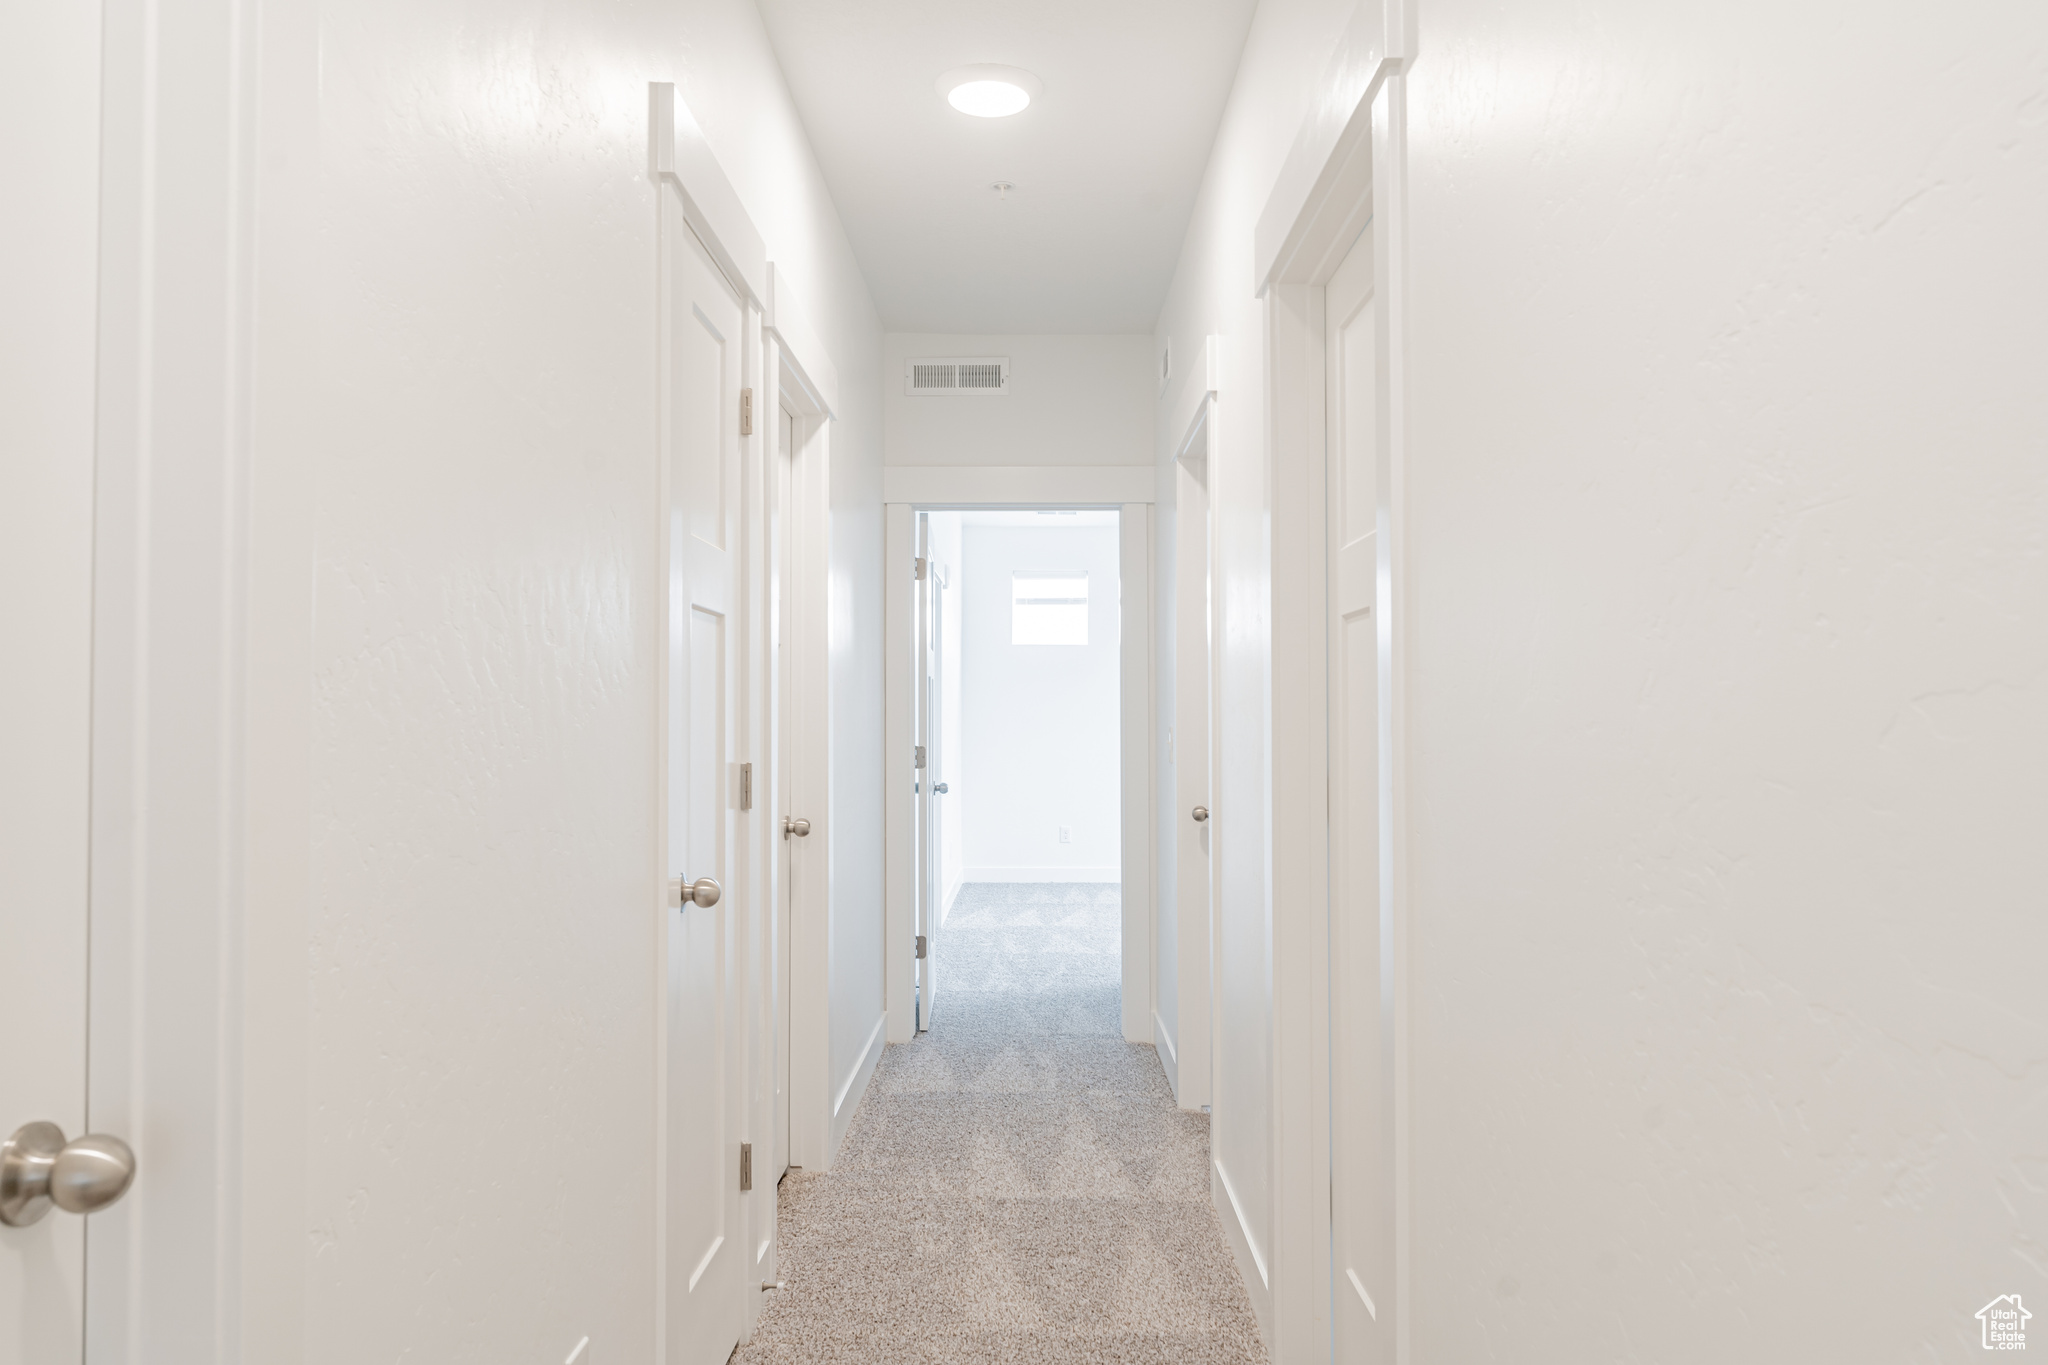 Corridor featuring light colored carpet